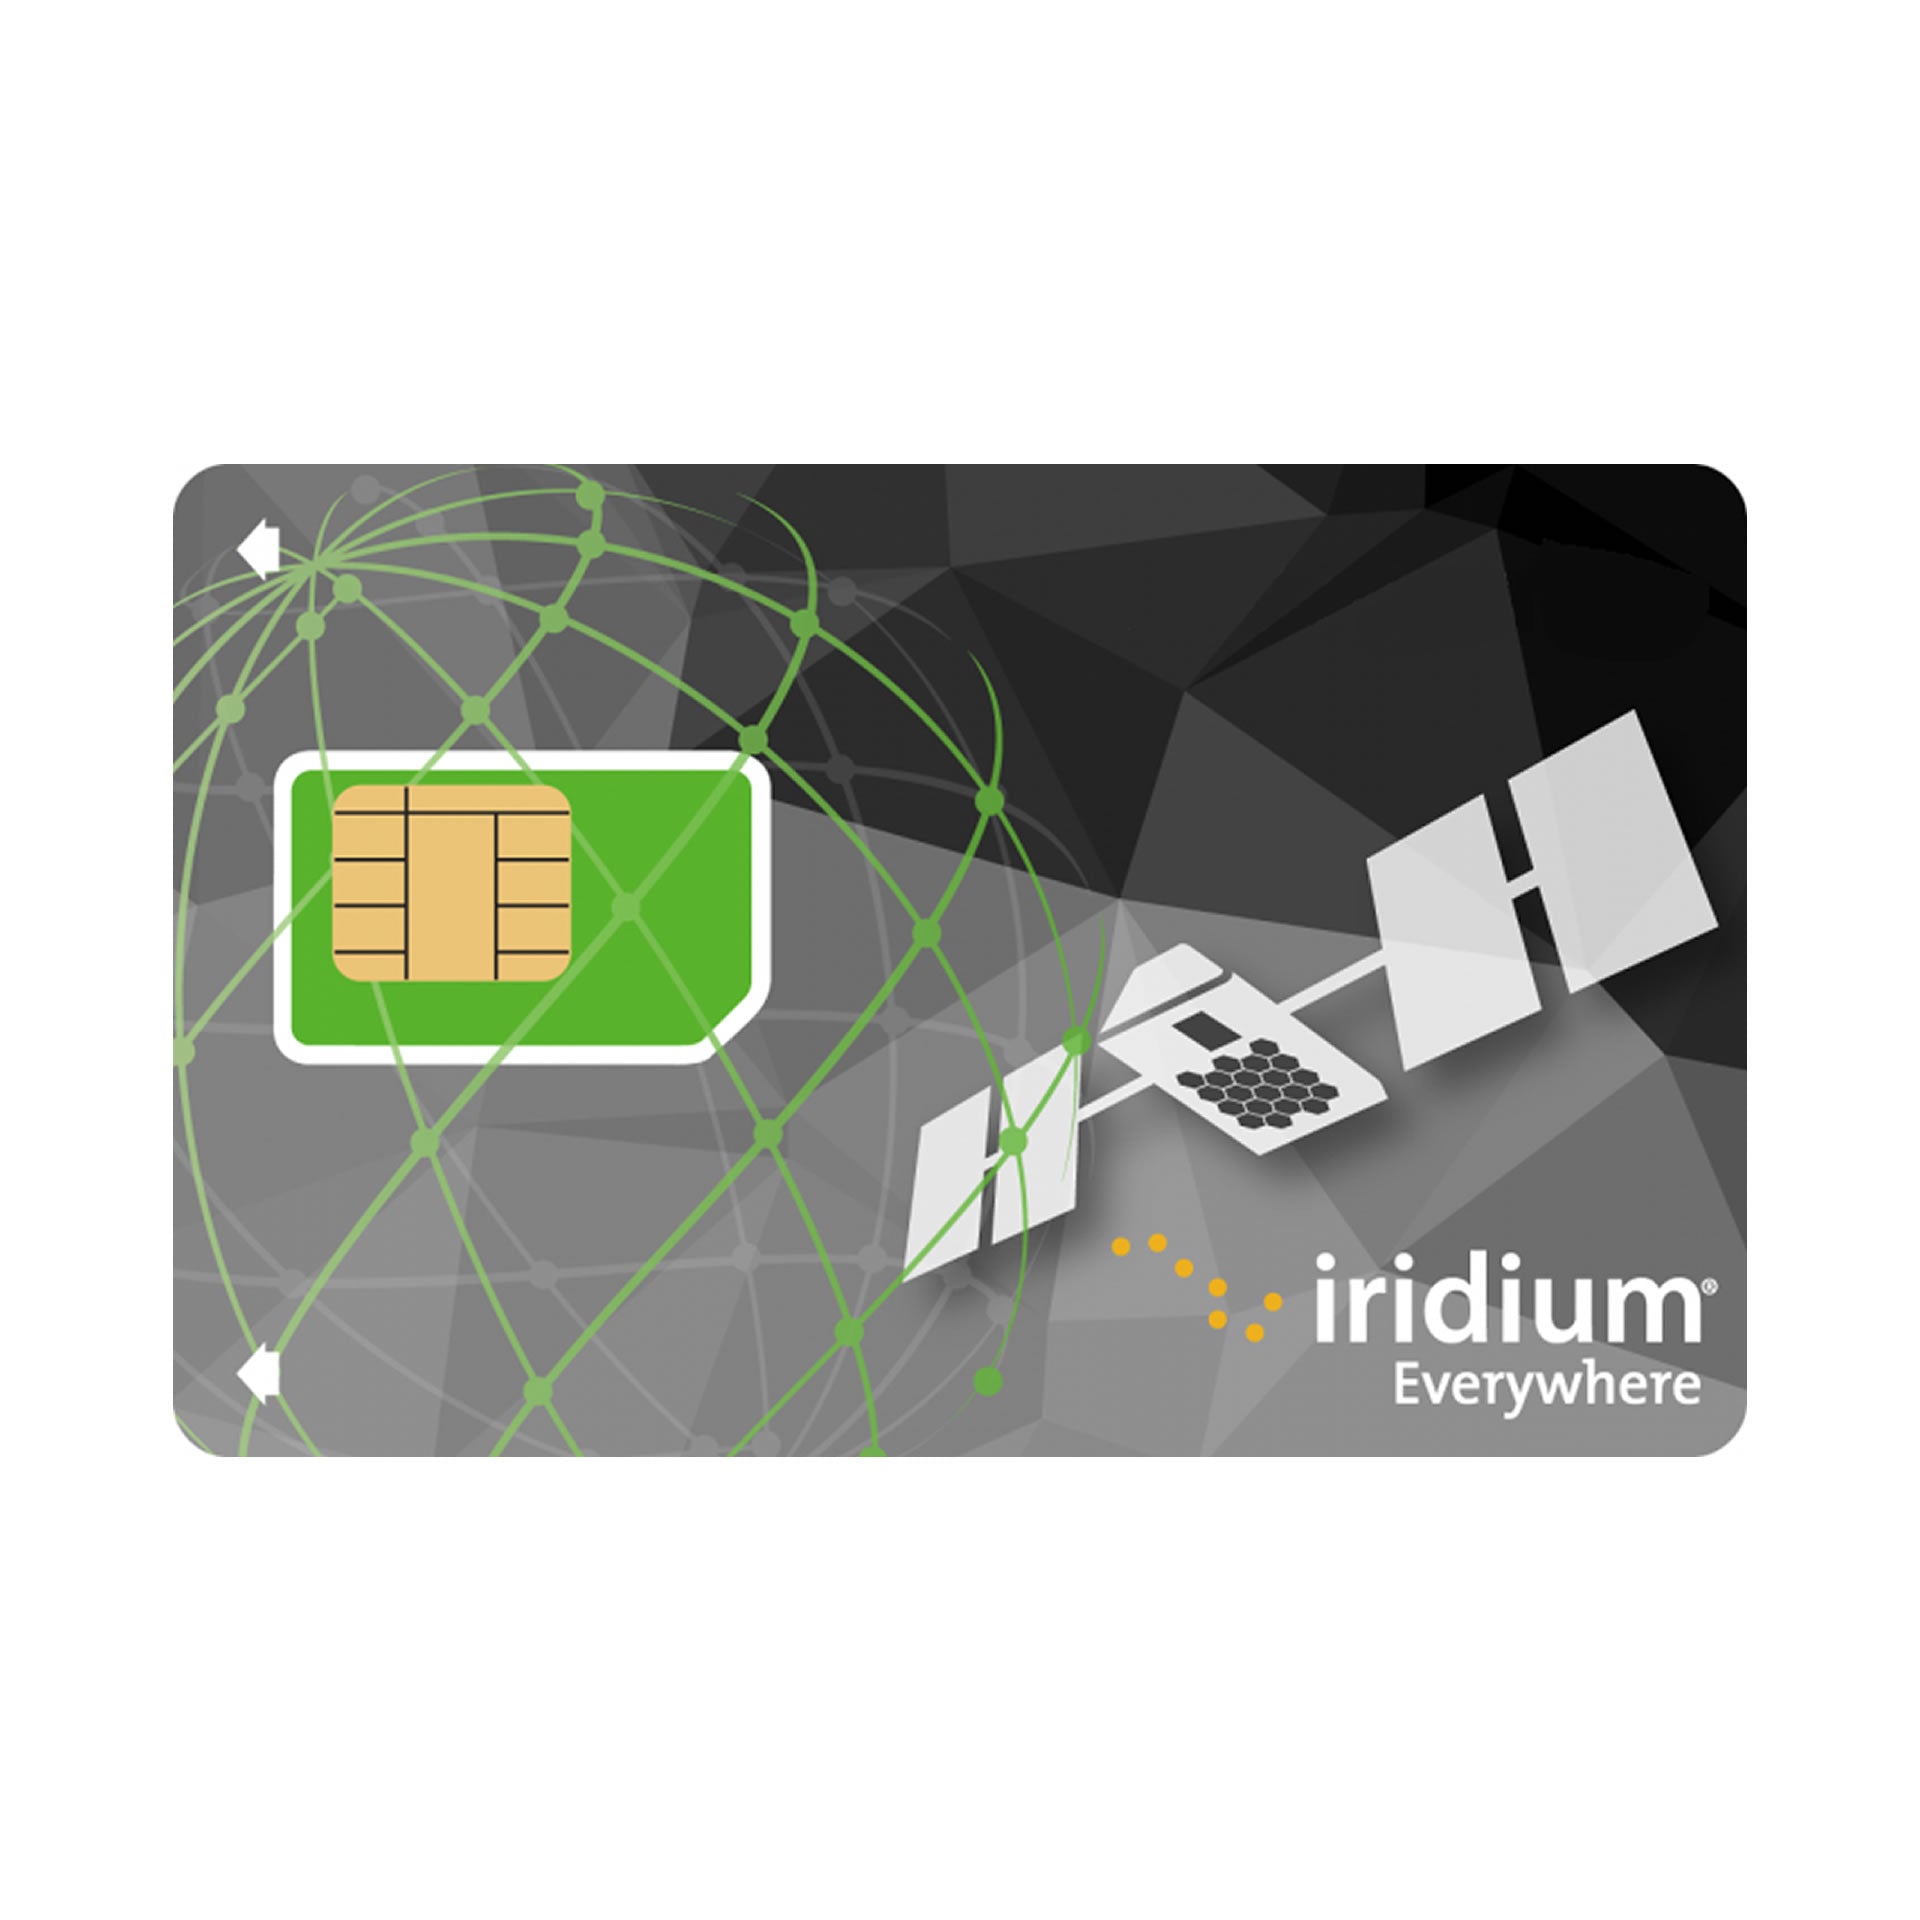 Prepaid IRIDIUM GO SIM Card - 400 min DATA - 6 MONTHS